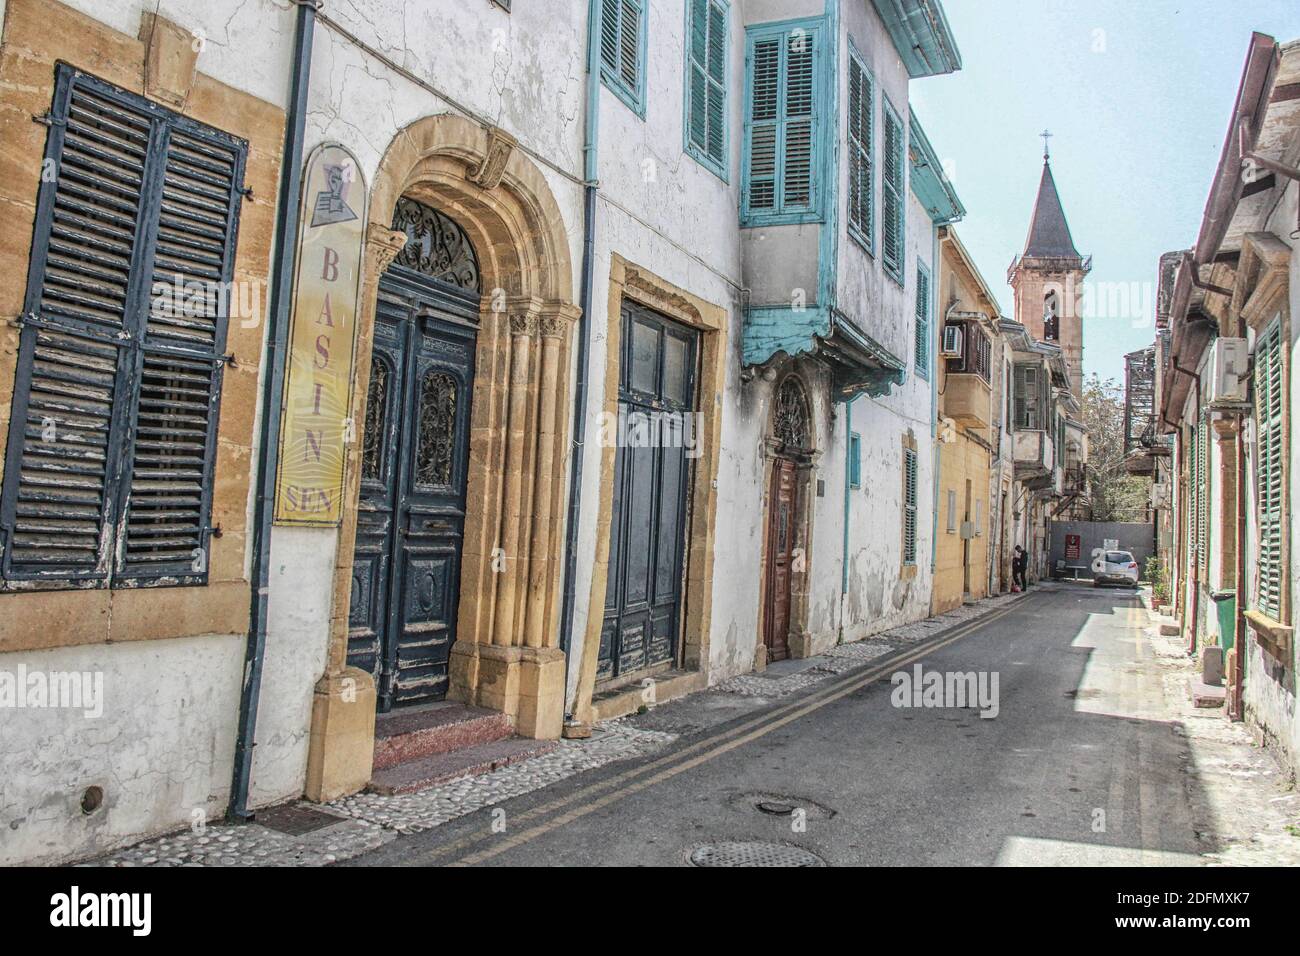 Eine alte Straße in Cypress, die Türen und bröckelnde Architektur zeigt Stockfoto